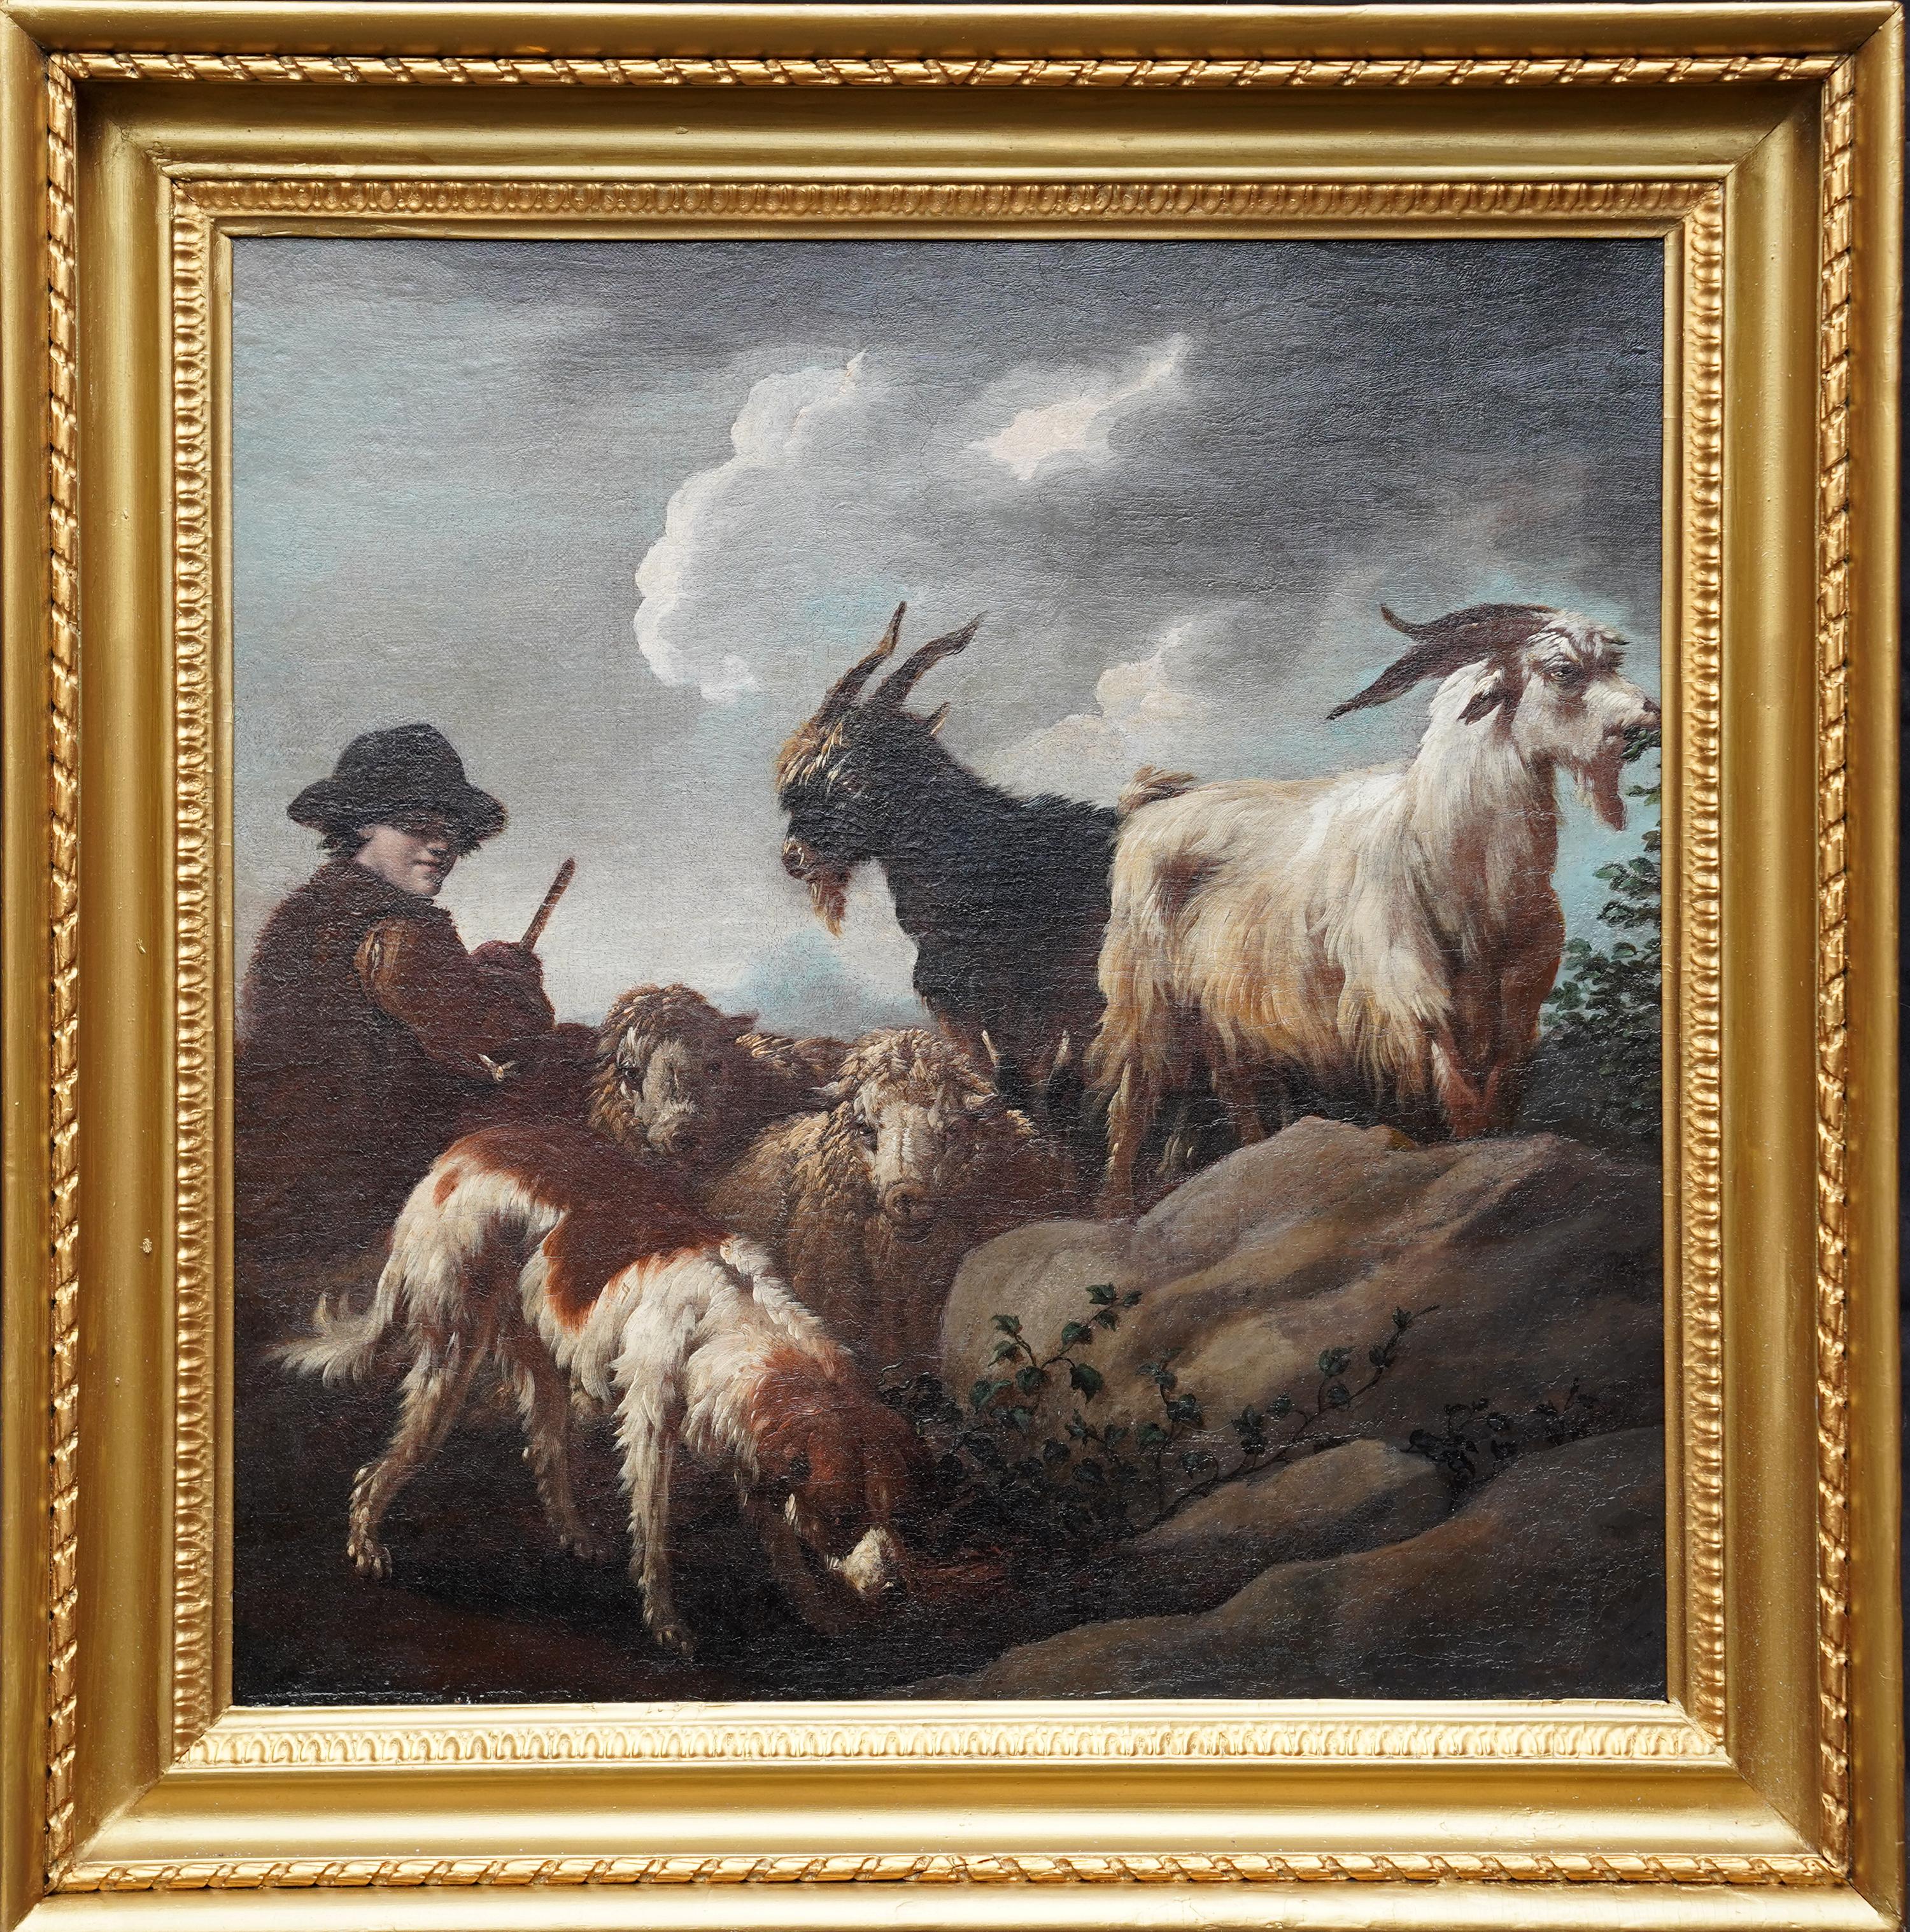 Animal Painting de Philipp Peter Roos (Rosa di Tivoli) - Escena pastoral con pastor y animales - Pintura al óleo de arte del Viejo Maestro c 1700